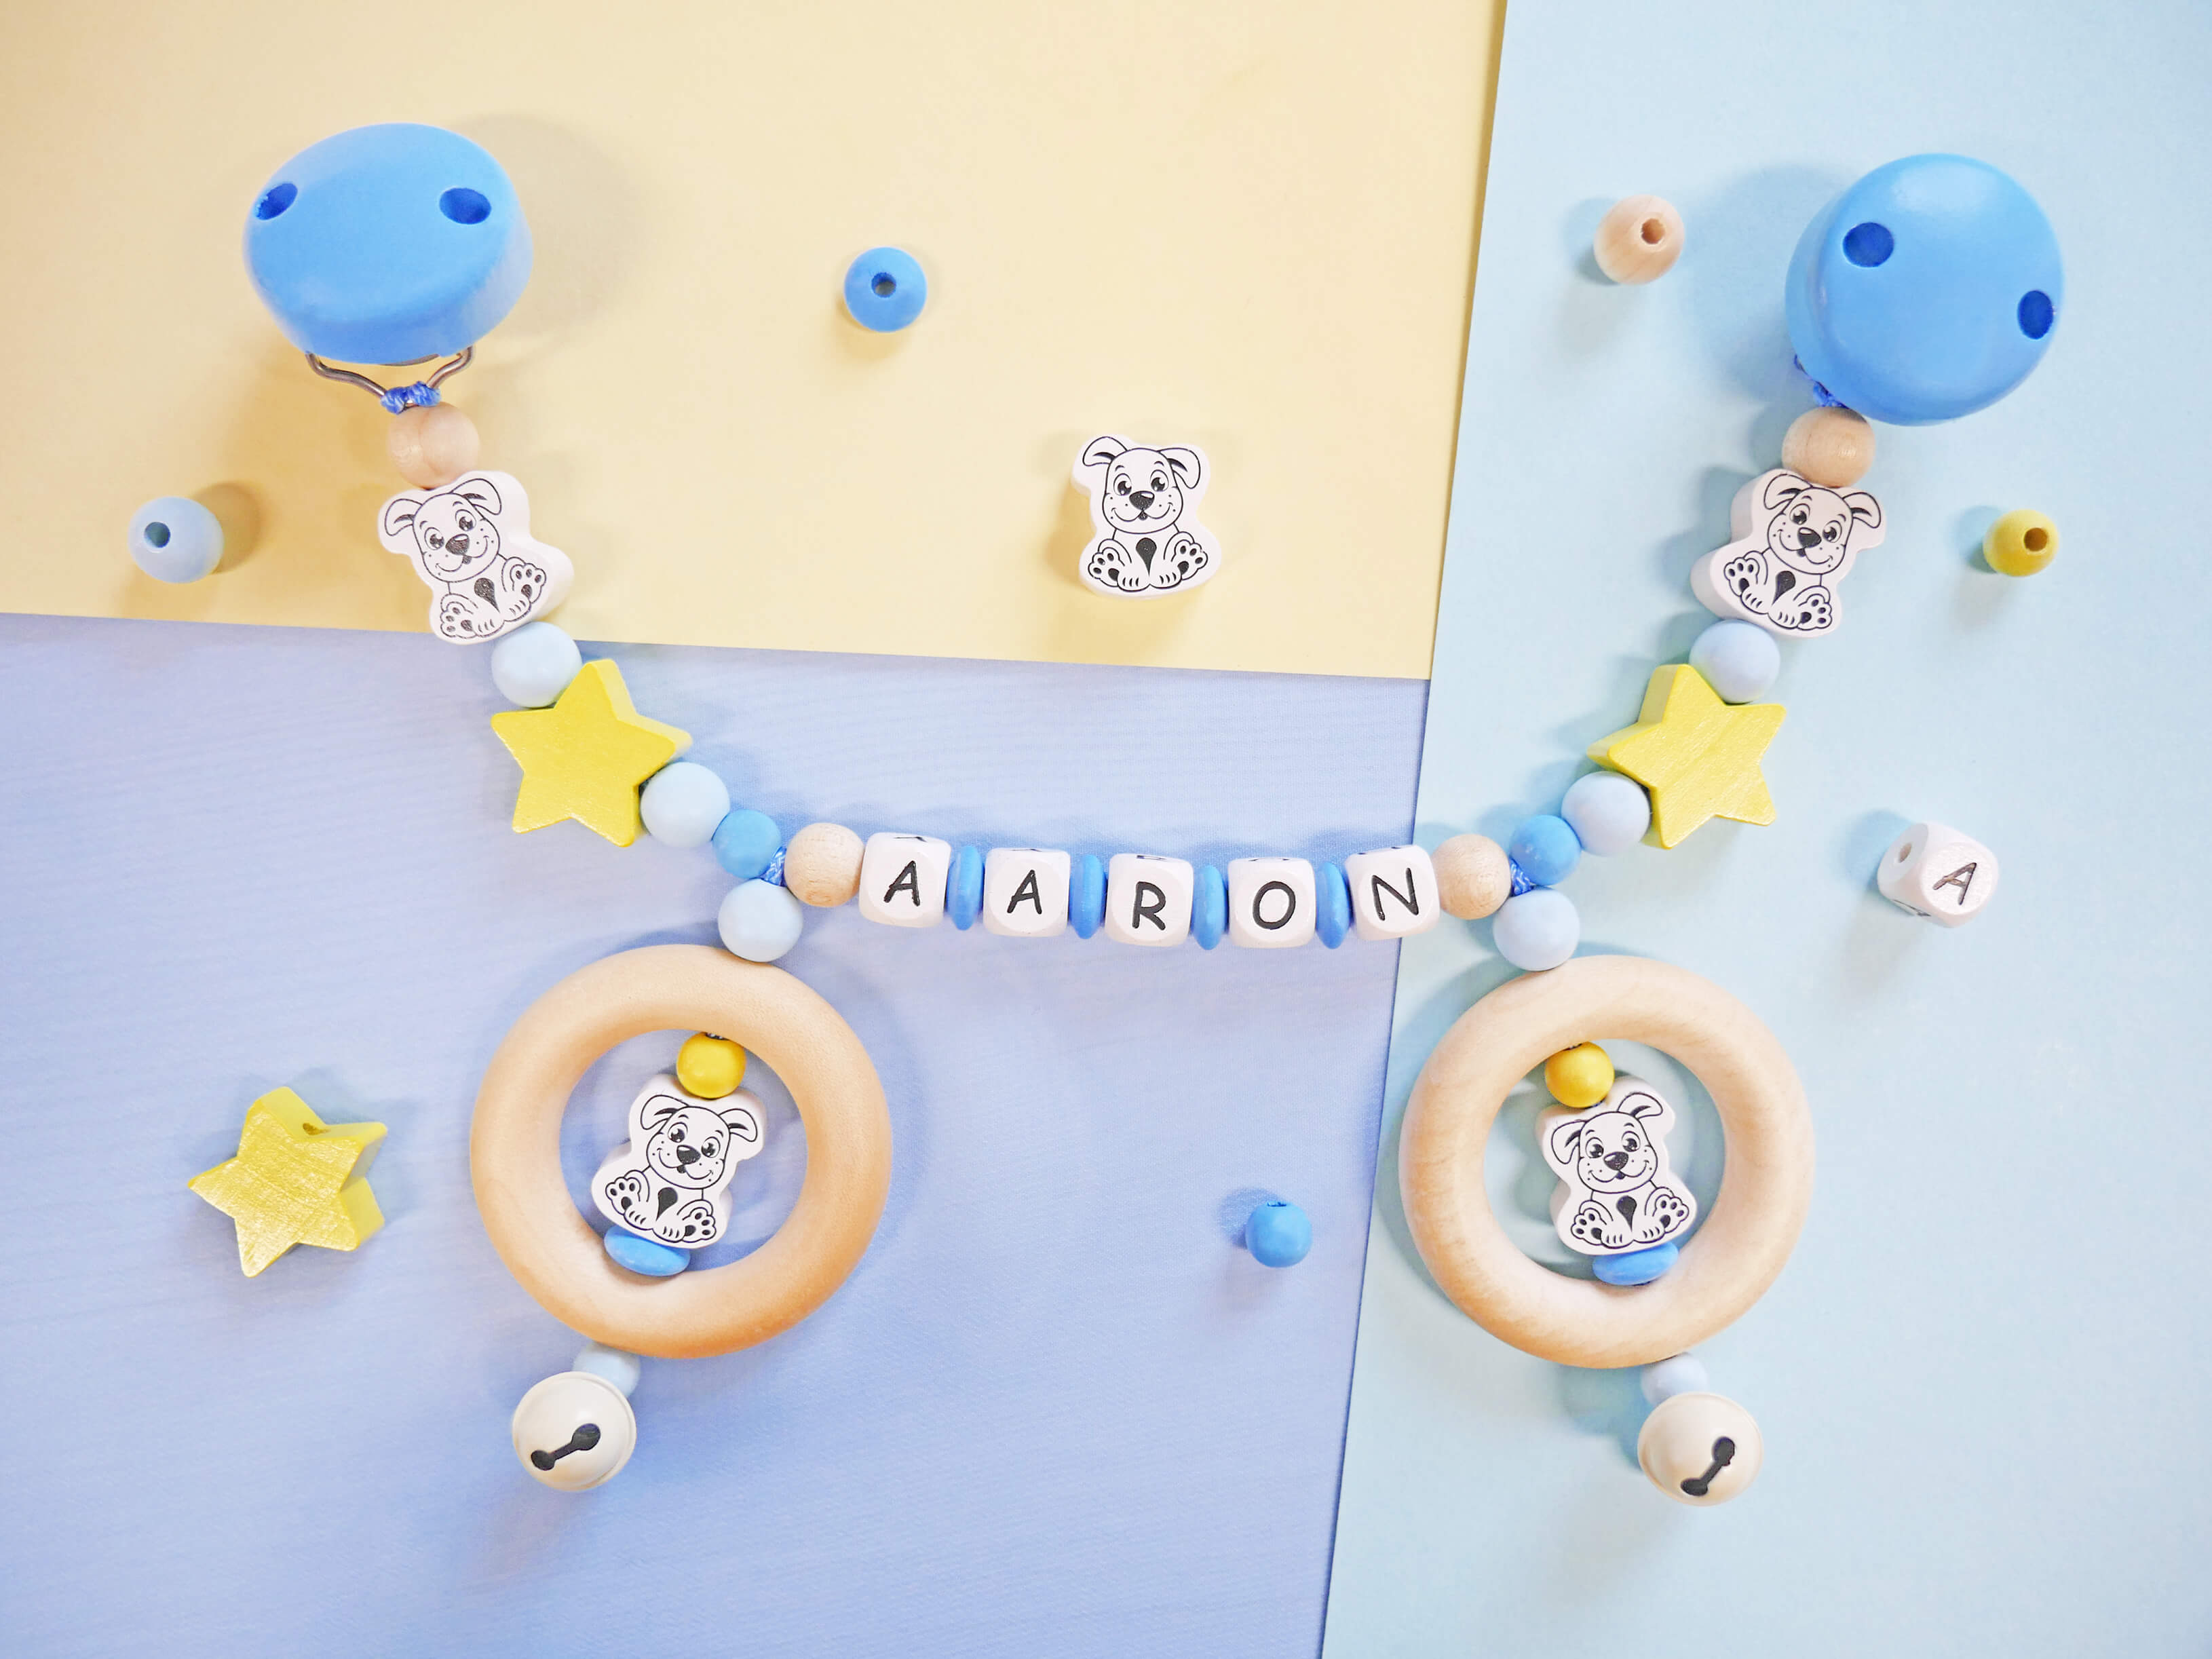 Kinderwagenkette in Skyblau, Babyblau und Pastellgelb mit Hunde- und Stern-Motivperlen